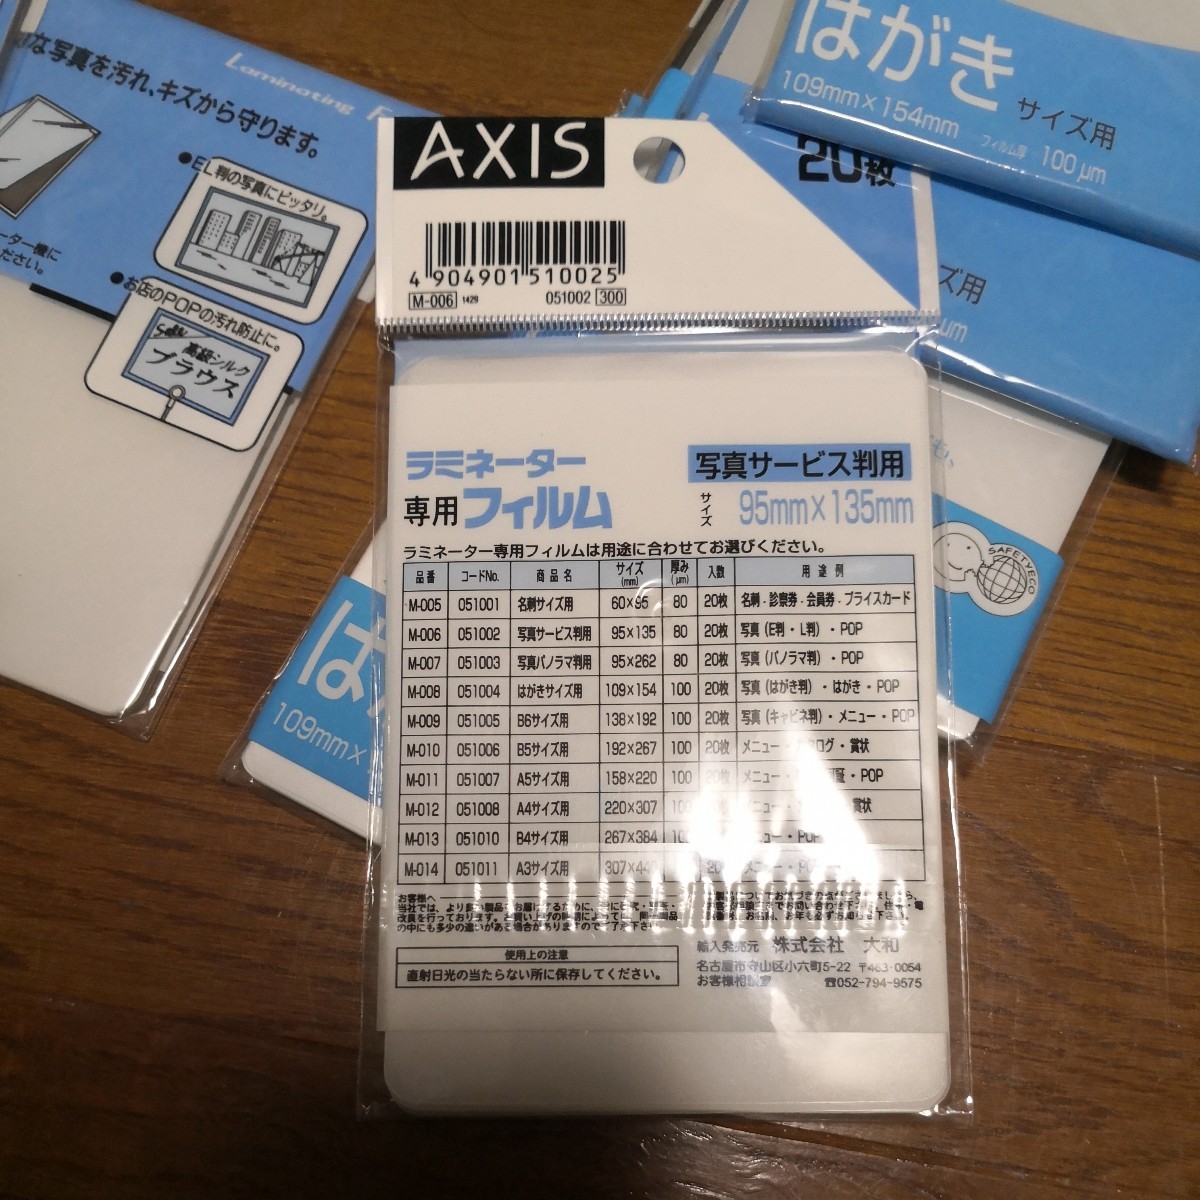  Aska ламинатор специальный плёнка открытка для BH-109 (61-9269-50) фотография для комплект 